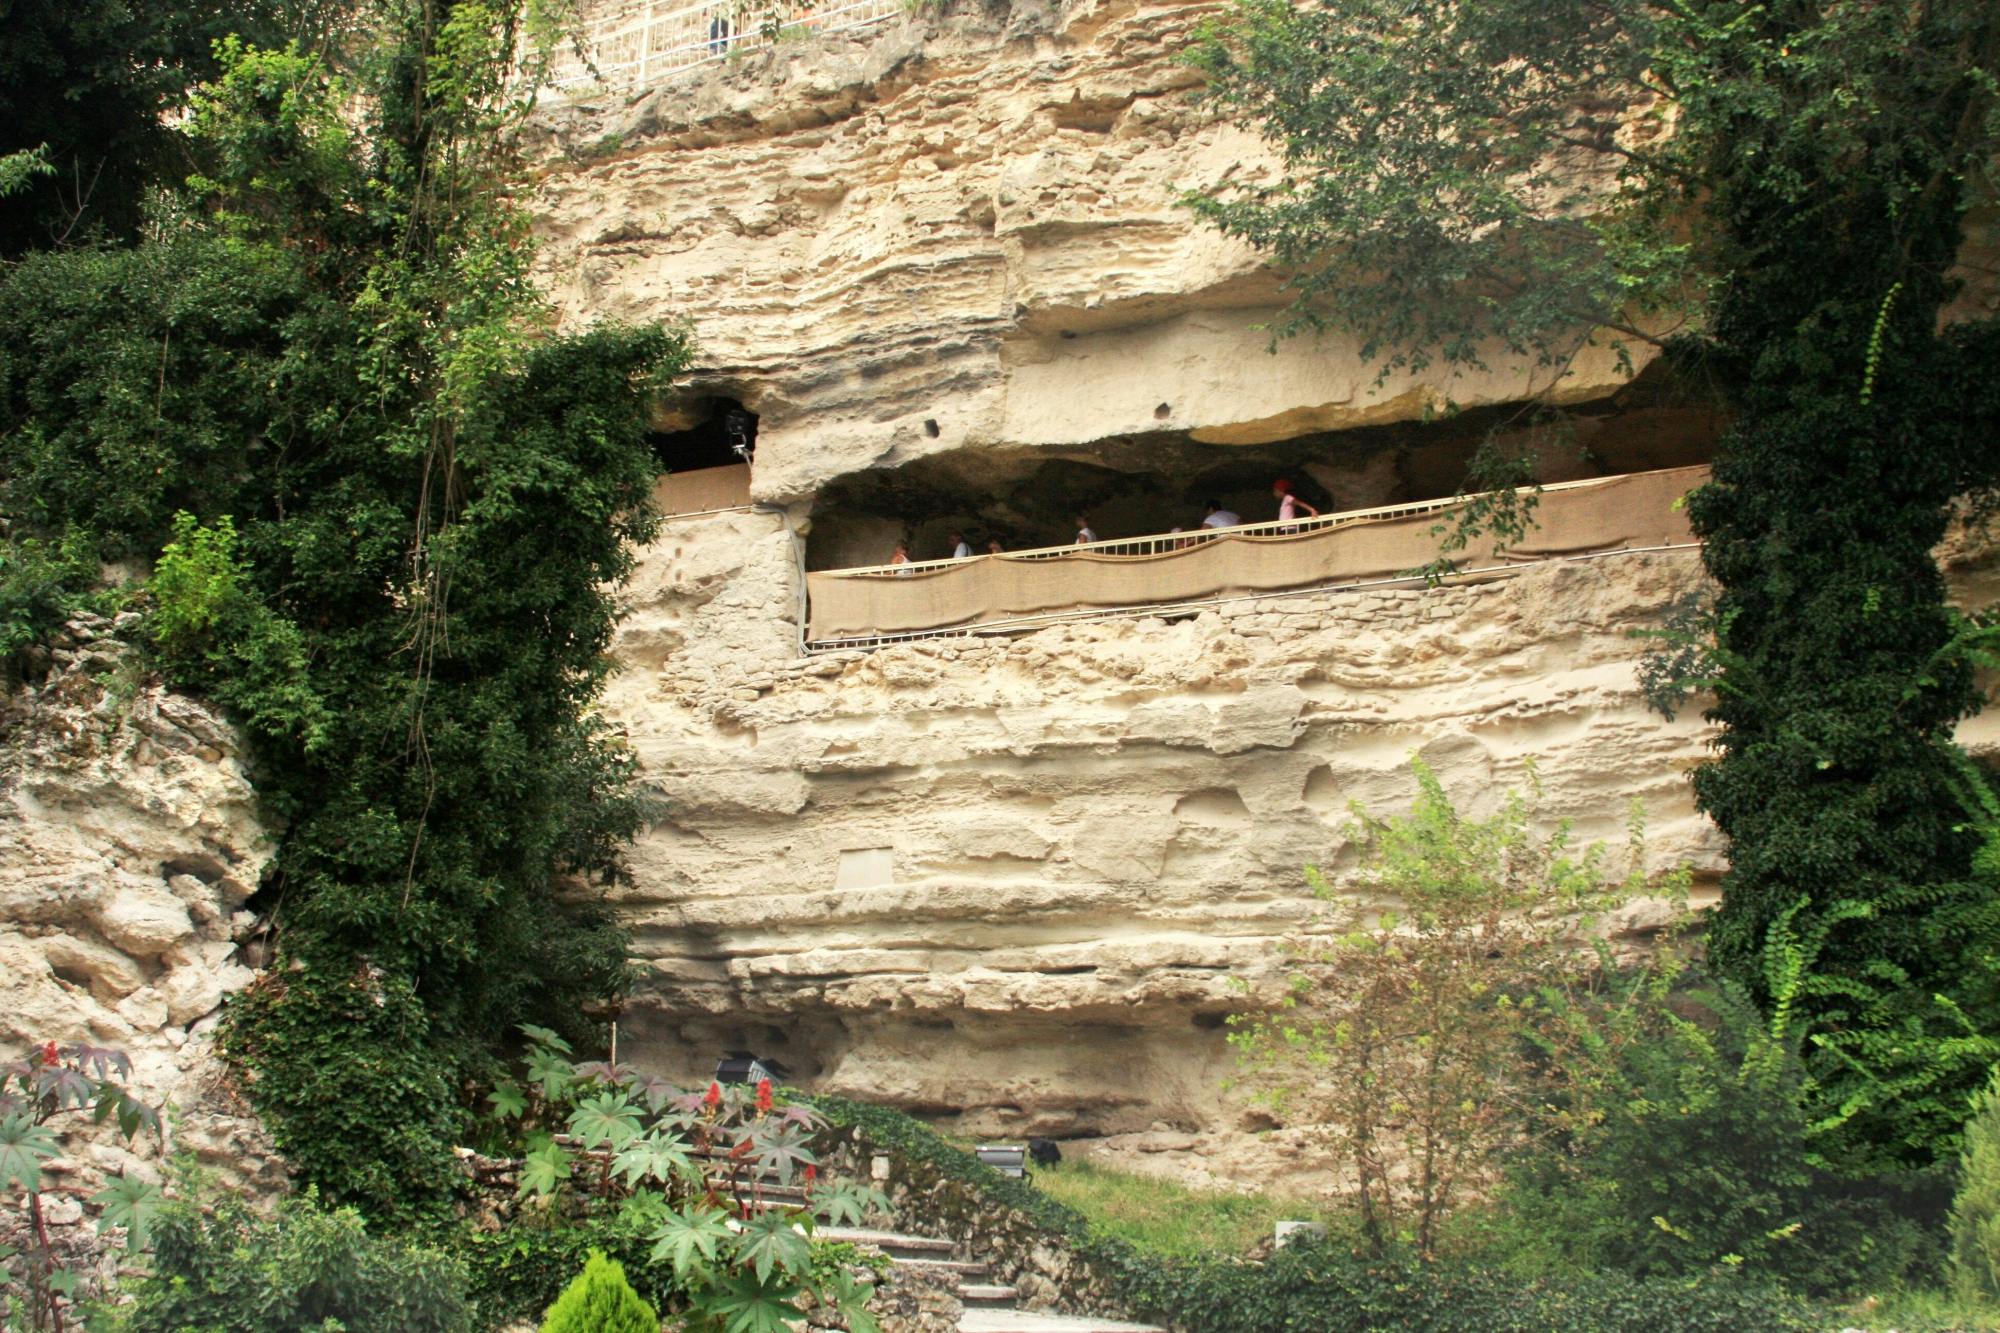 Aladzha Monastery, Balchik and Varna Tour